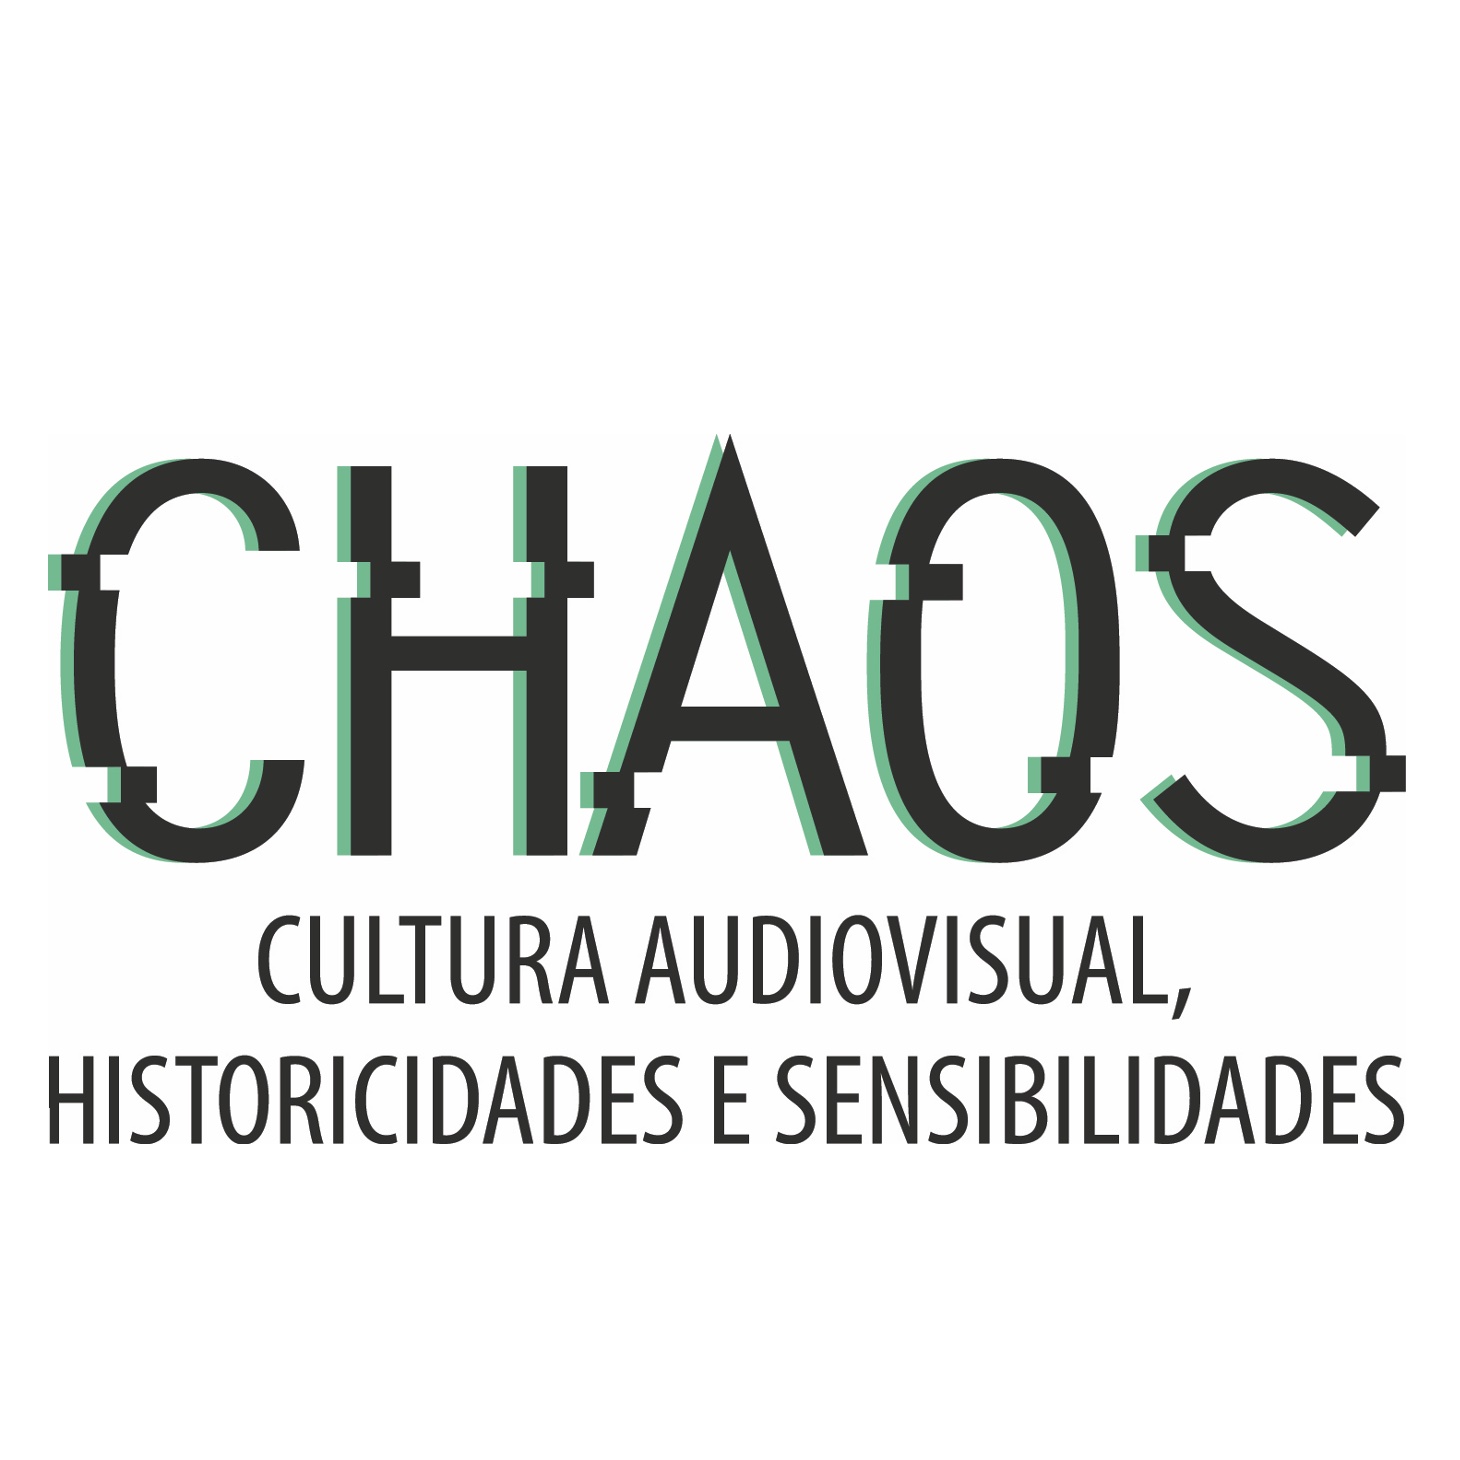 Sobre fundo branco, destaca-se a sigla CHAOS, escrita com letras que mimetizam as linhas de varredura de uma tela de televisão. Abaixo, lê-se "Cultura Audiovisual, Historicidades e Sensibilidades".